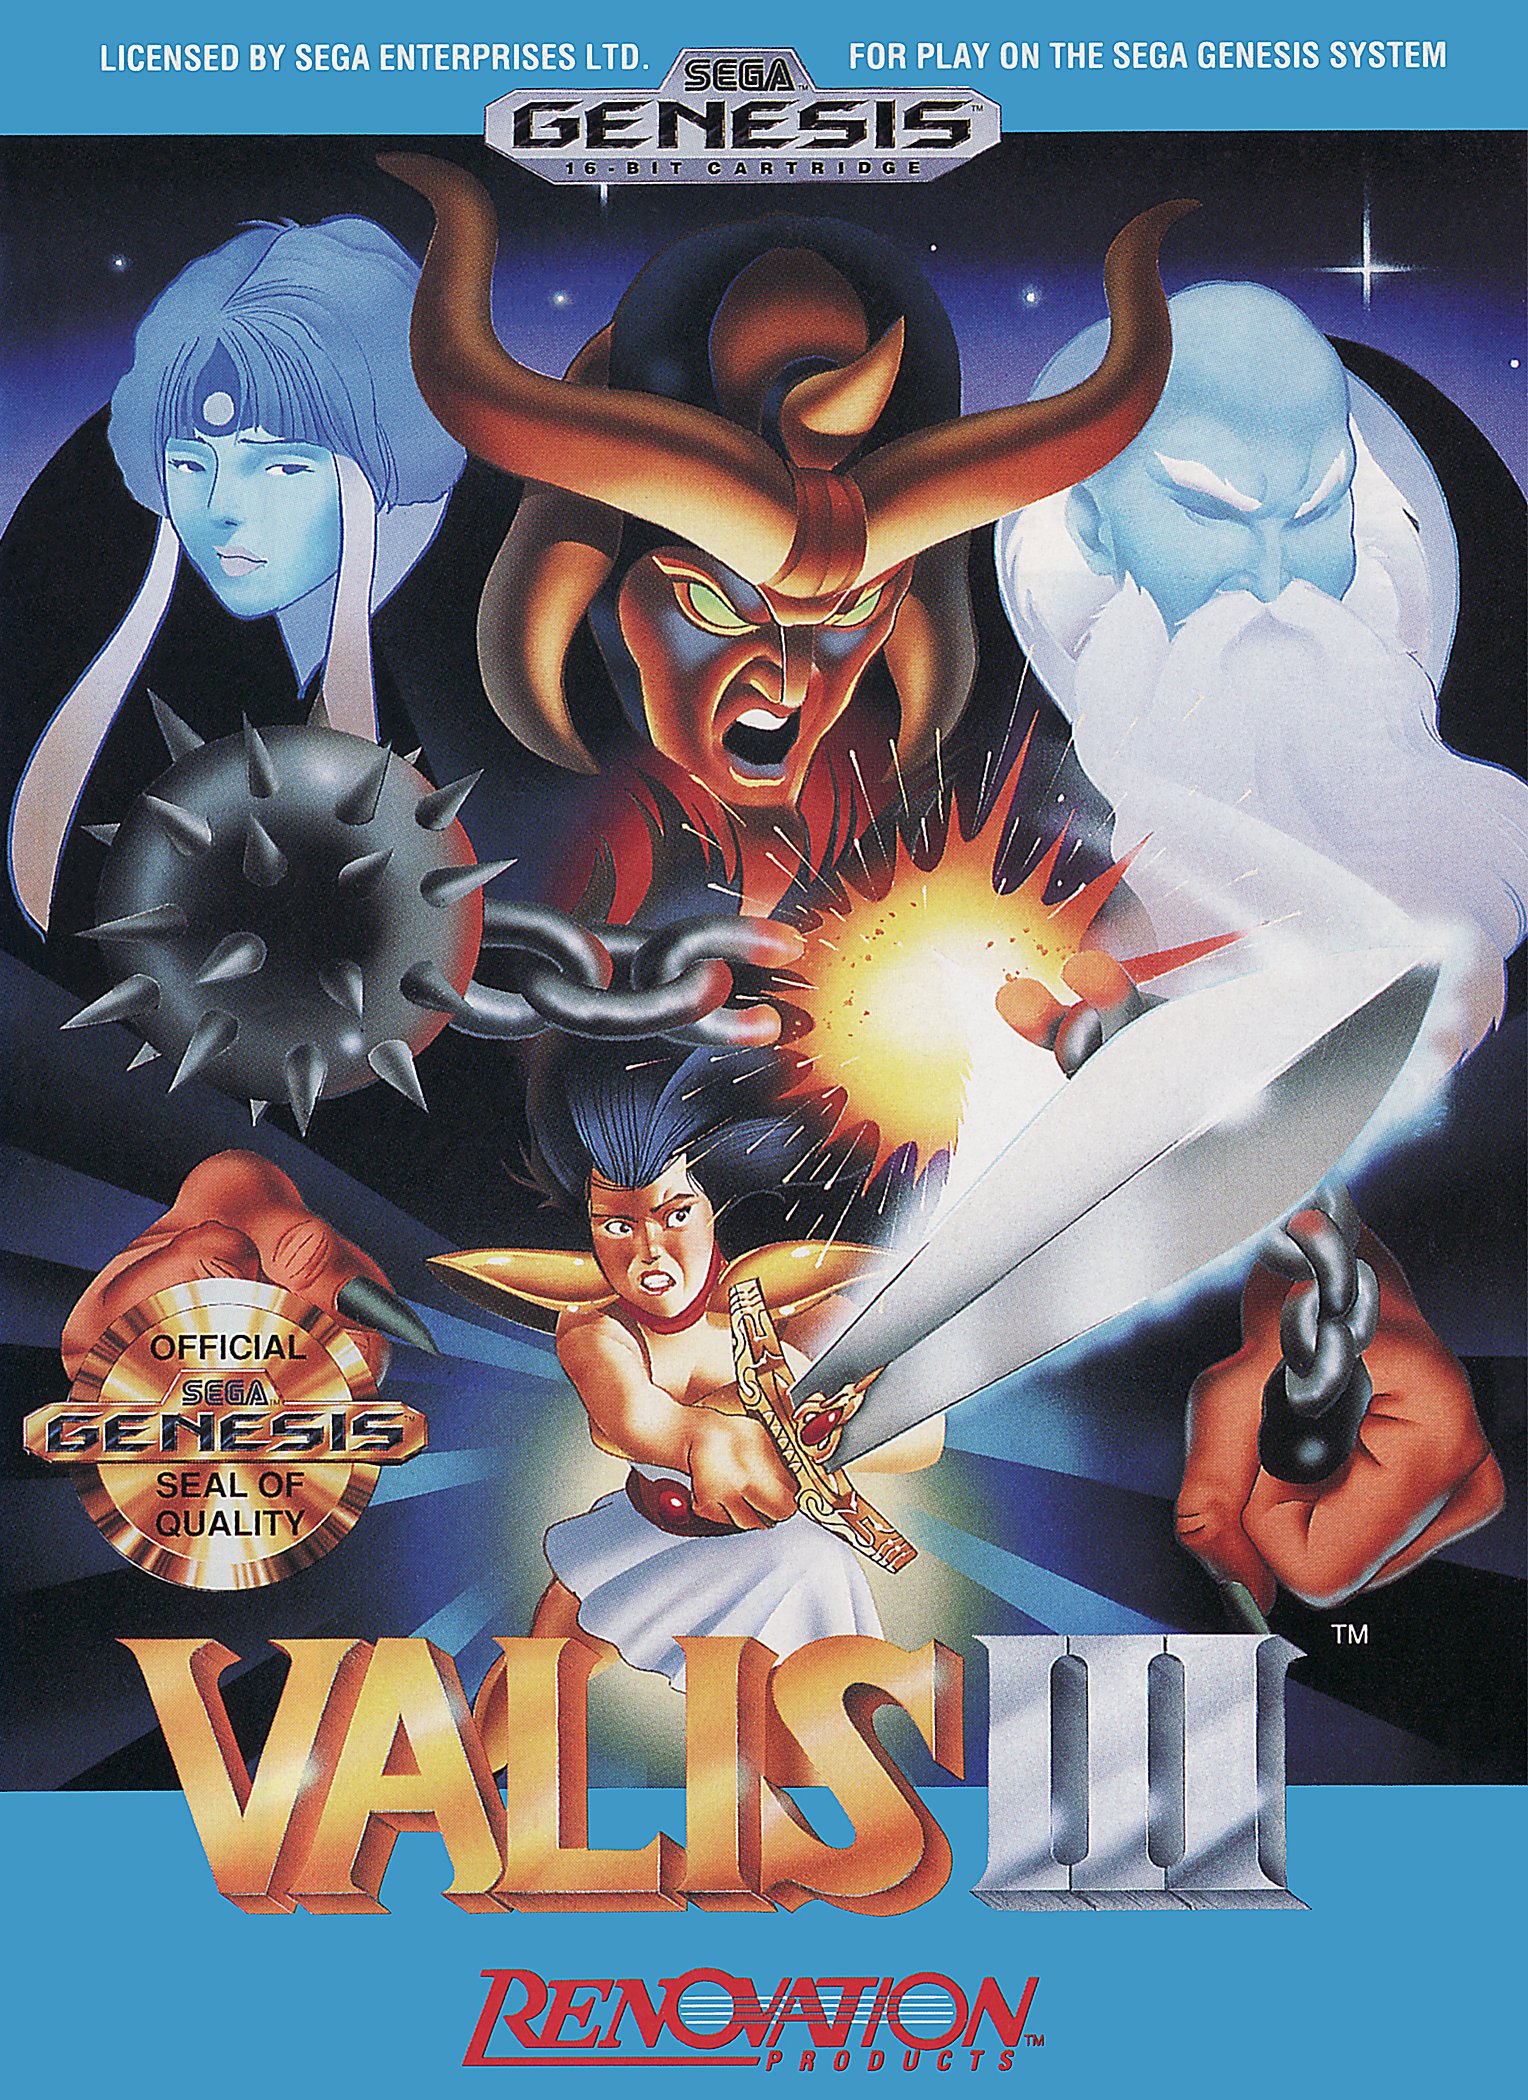 Image of Valis III